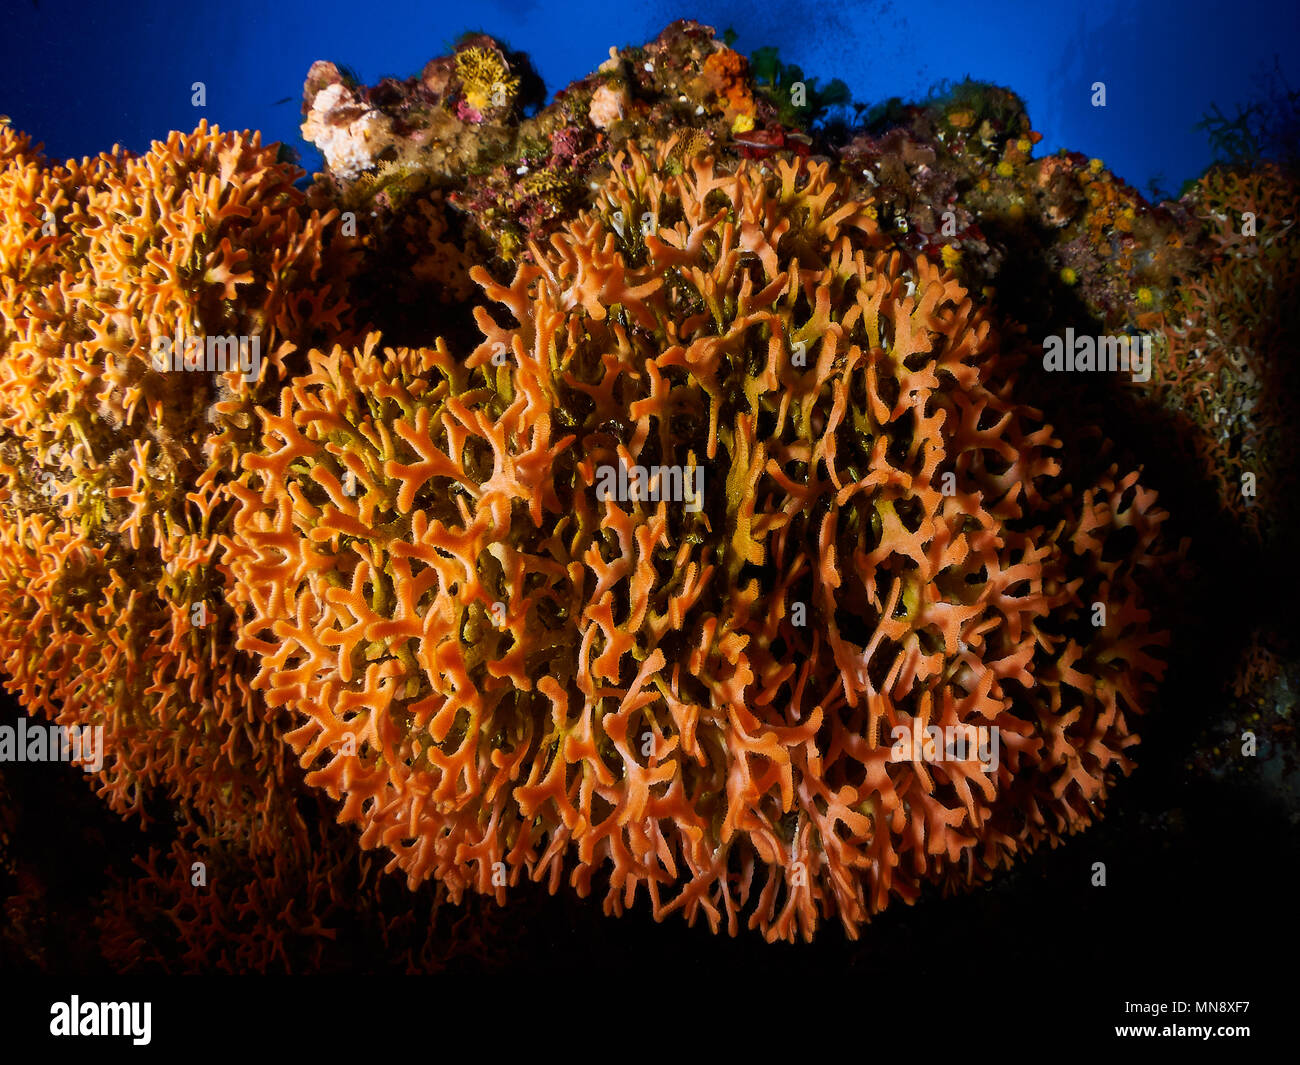 Vista subacquea delle colonie di briozoi di Adeonella calveti alle scogliere profonde dell'isolotto di es Vedrá (Ibiza, Isole Baleari, Mar Mediterraneo, Spagna) Foto Stock